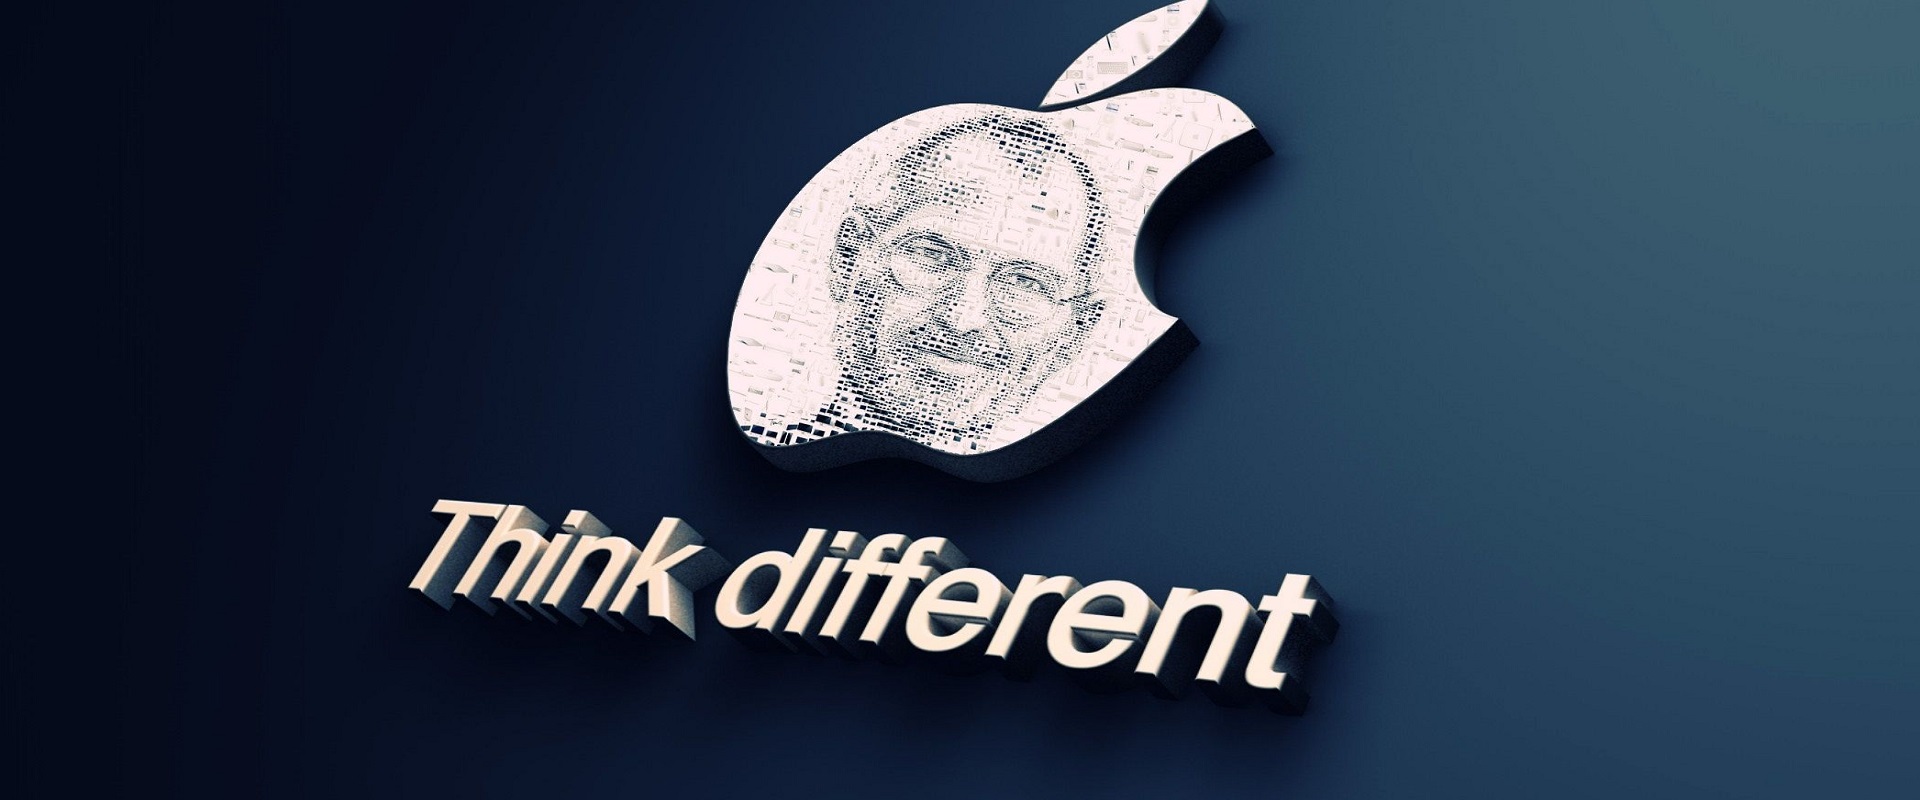 7 câu nói kinh điển của Steve Jobs với người khởi nghiệp kinh doanh (P1)